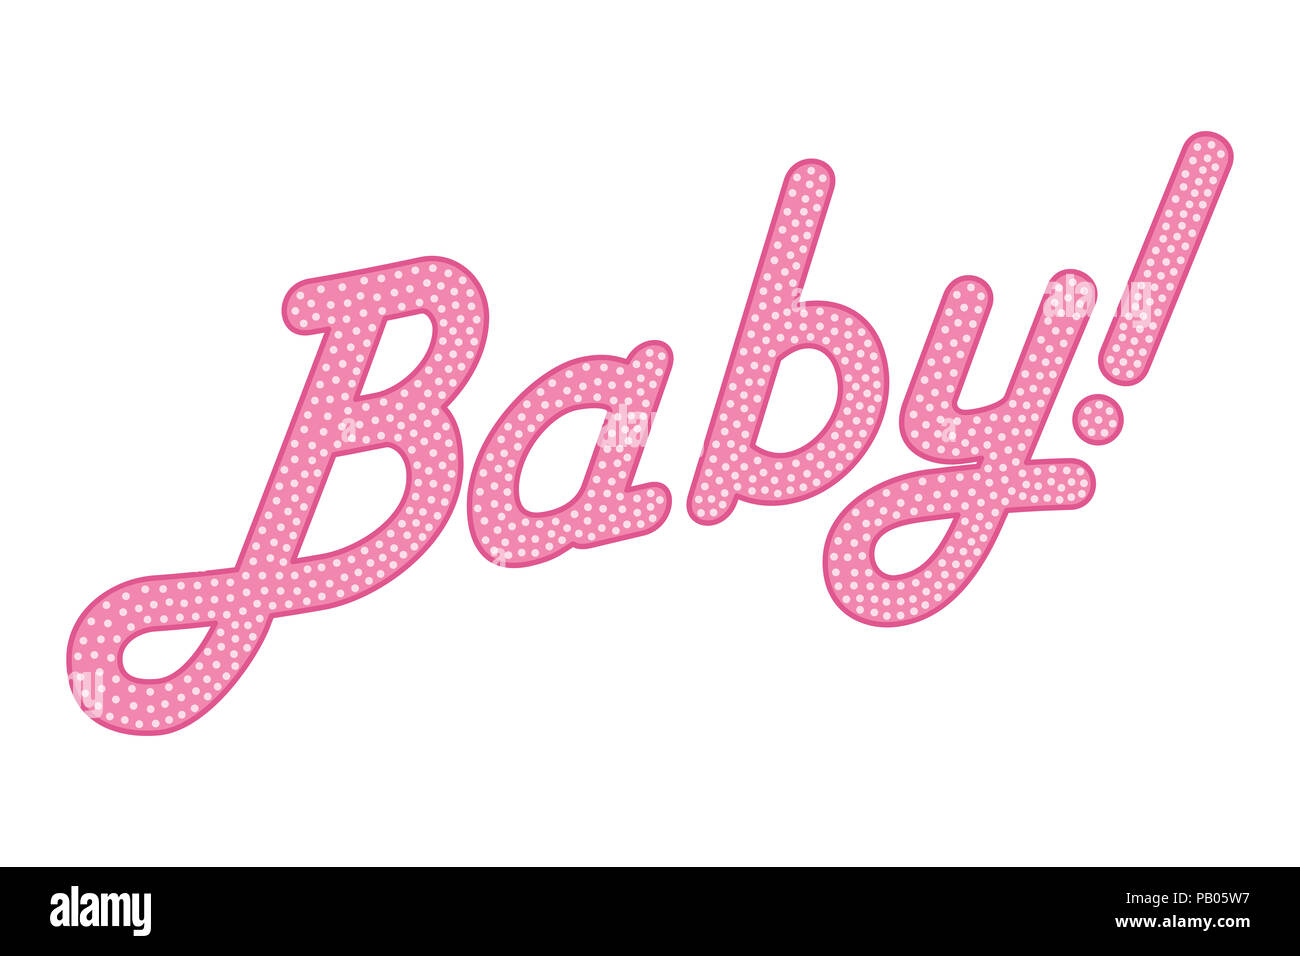 Lettrage cursives du mot bébé avec indicatif, de couleur rose et avec des petits points. En pointillés au hasard, l'écriture en italique. Isolées. L'illustration. Banque D'Images